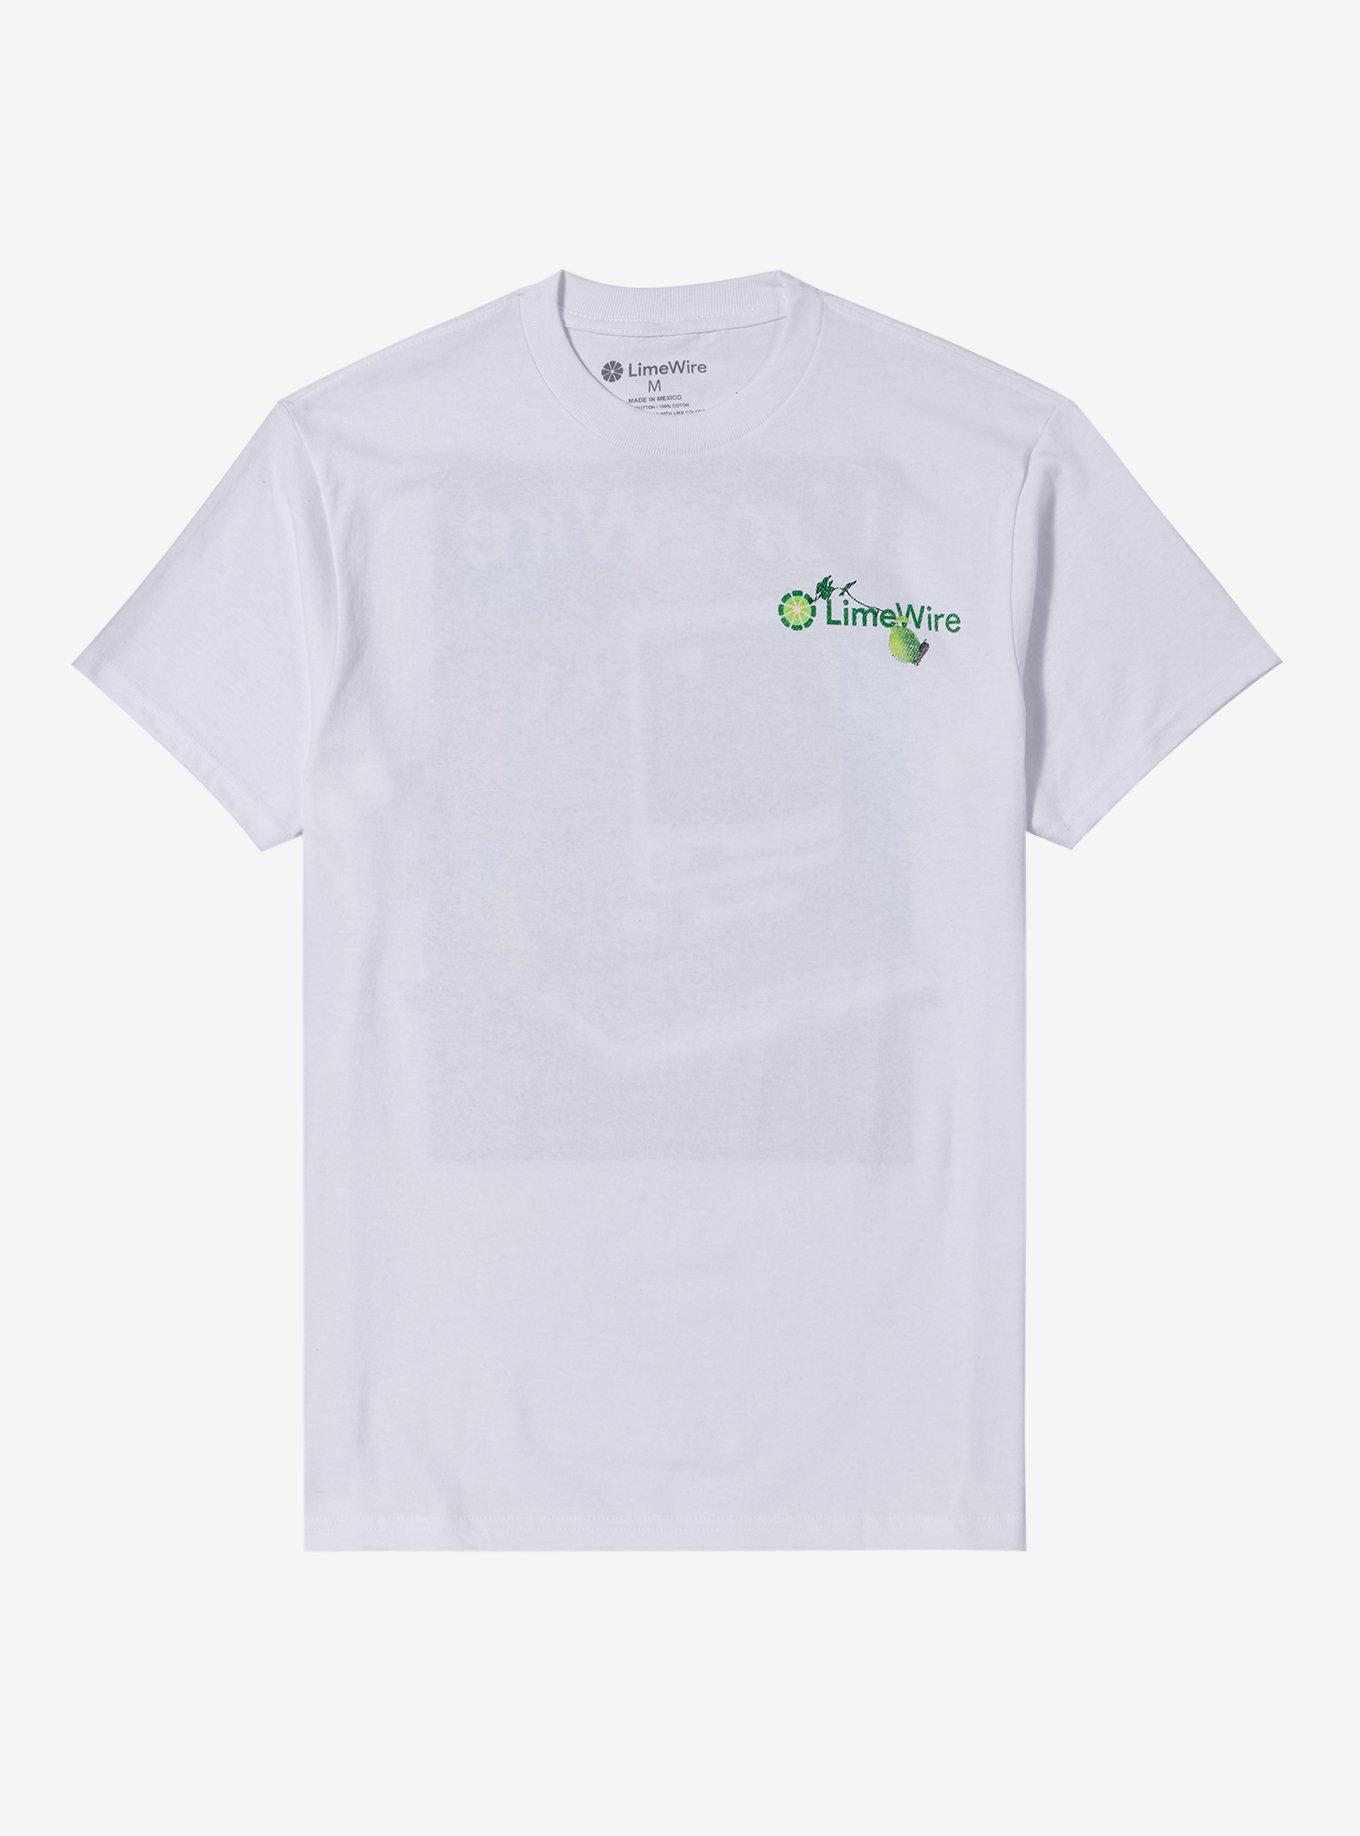 LimeWire Desktop Computer T-Shirt, MULTI, hi-res